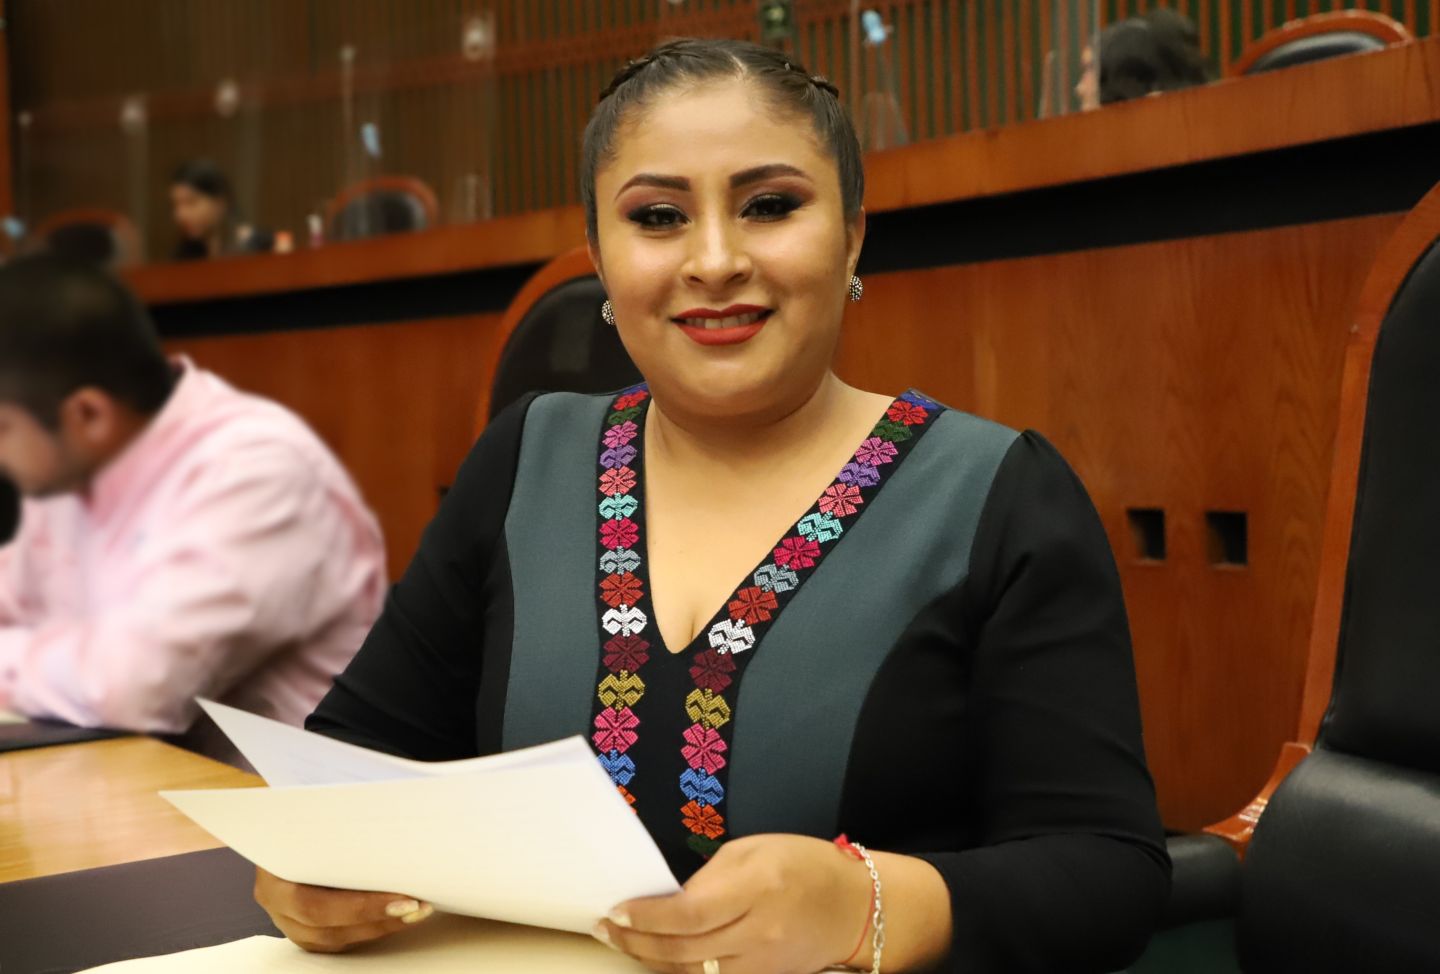 Realizan consultas en materia electoral en colonias y comunidades de Chilpancingo

